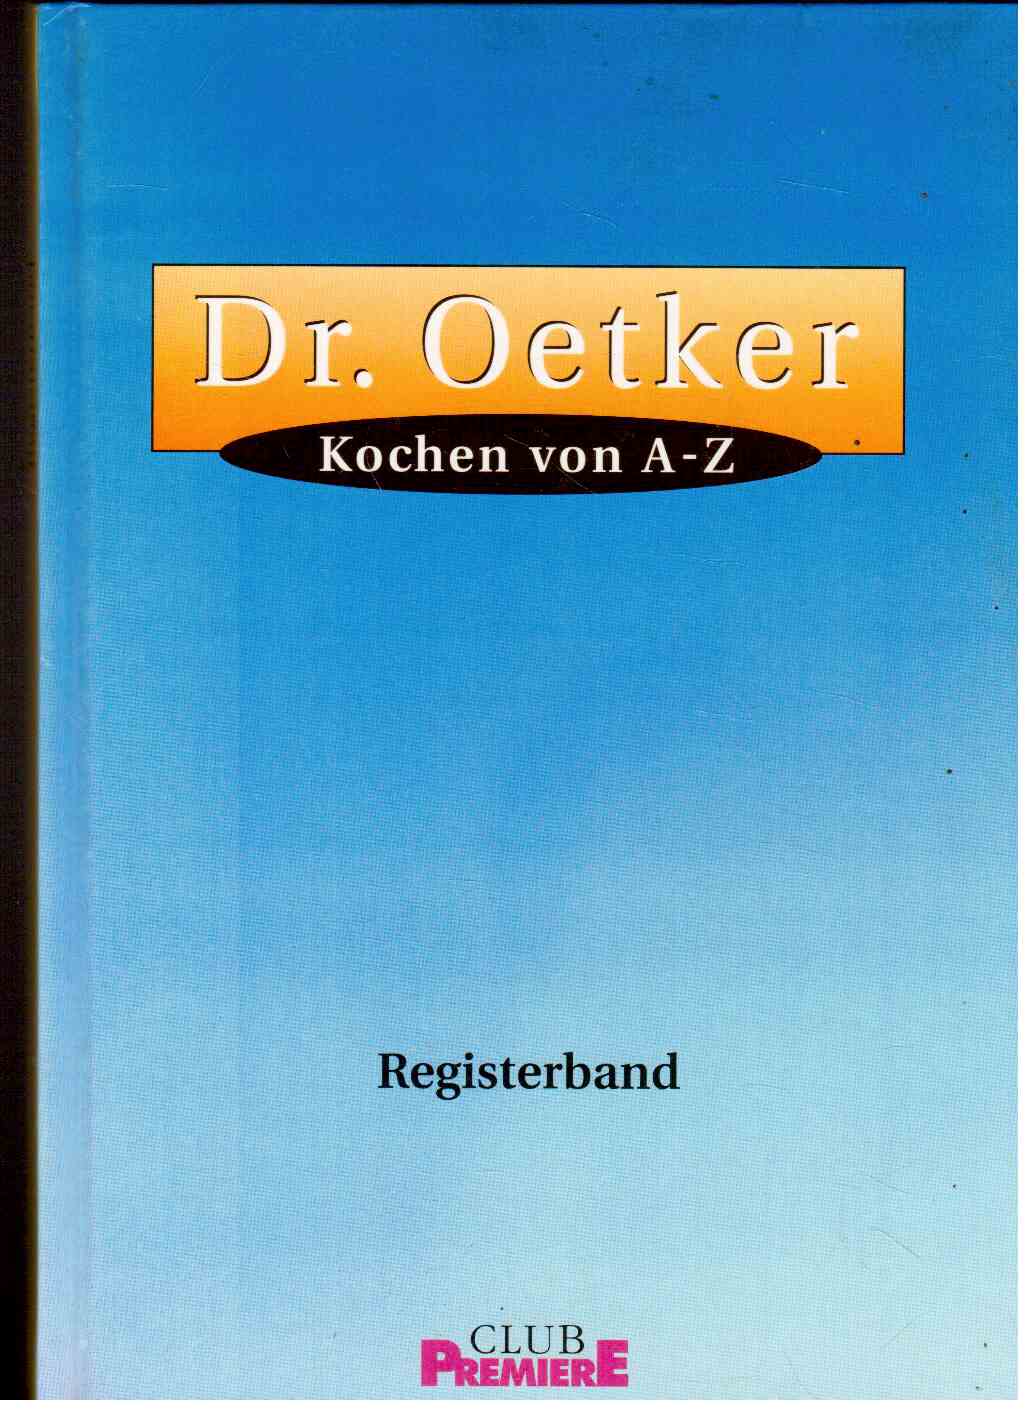 Dr. Oetker. Kochen von A-Z. Registerband.